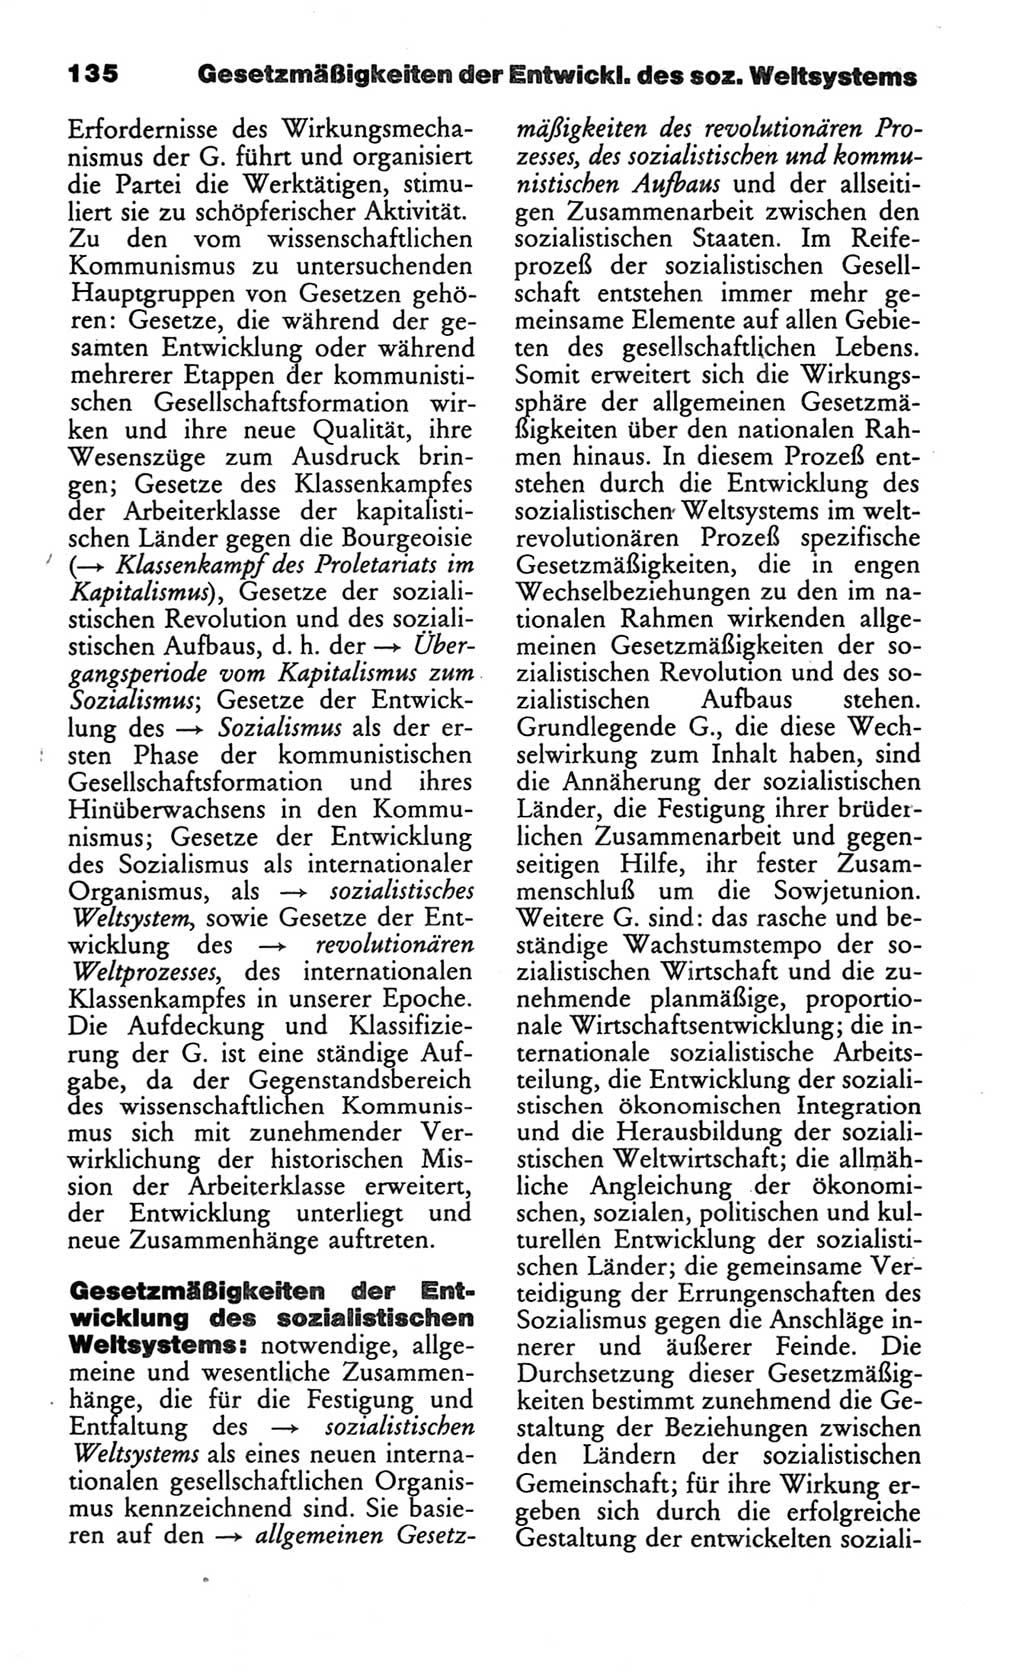 Wörterbuch des wissenschaftlichen Kommunismus [Deutsche Demokratische Republik (DDR)] 1986, Seite 135 (Wb. wiss. Komm. DDR 1986, S. 135)